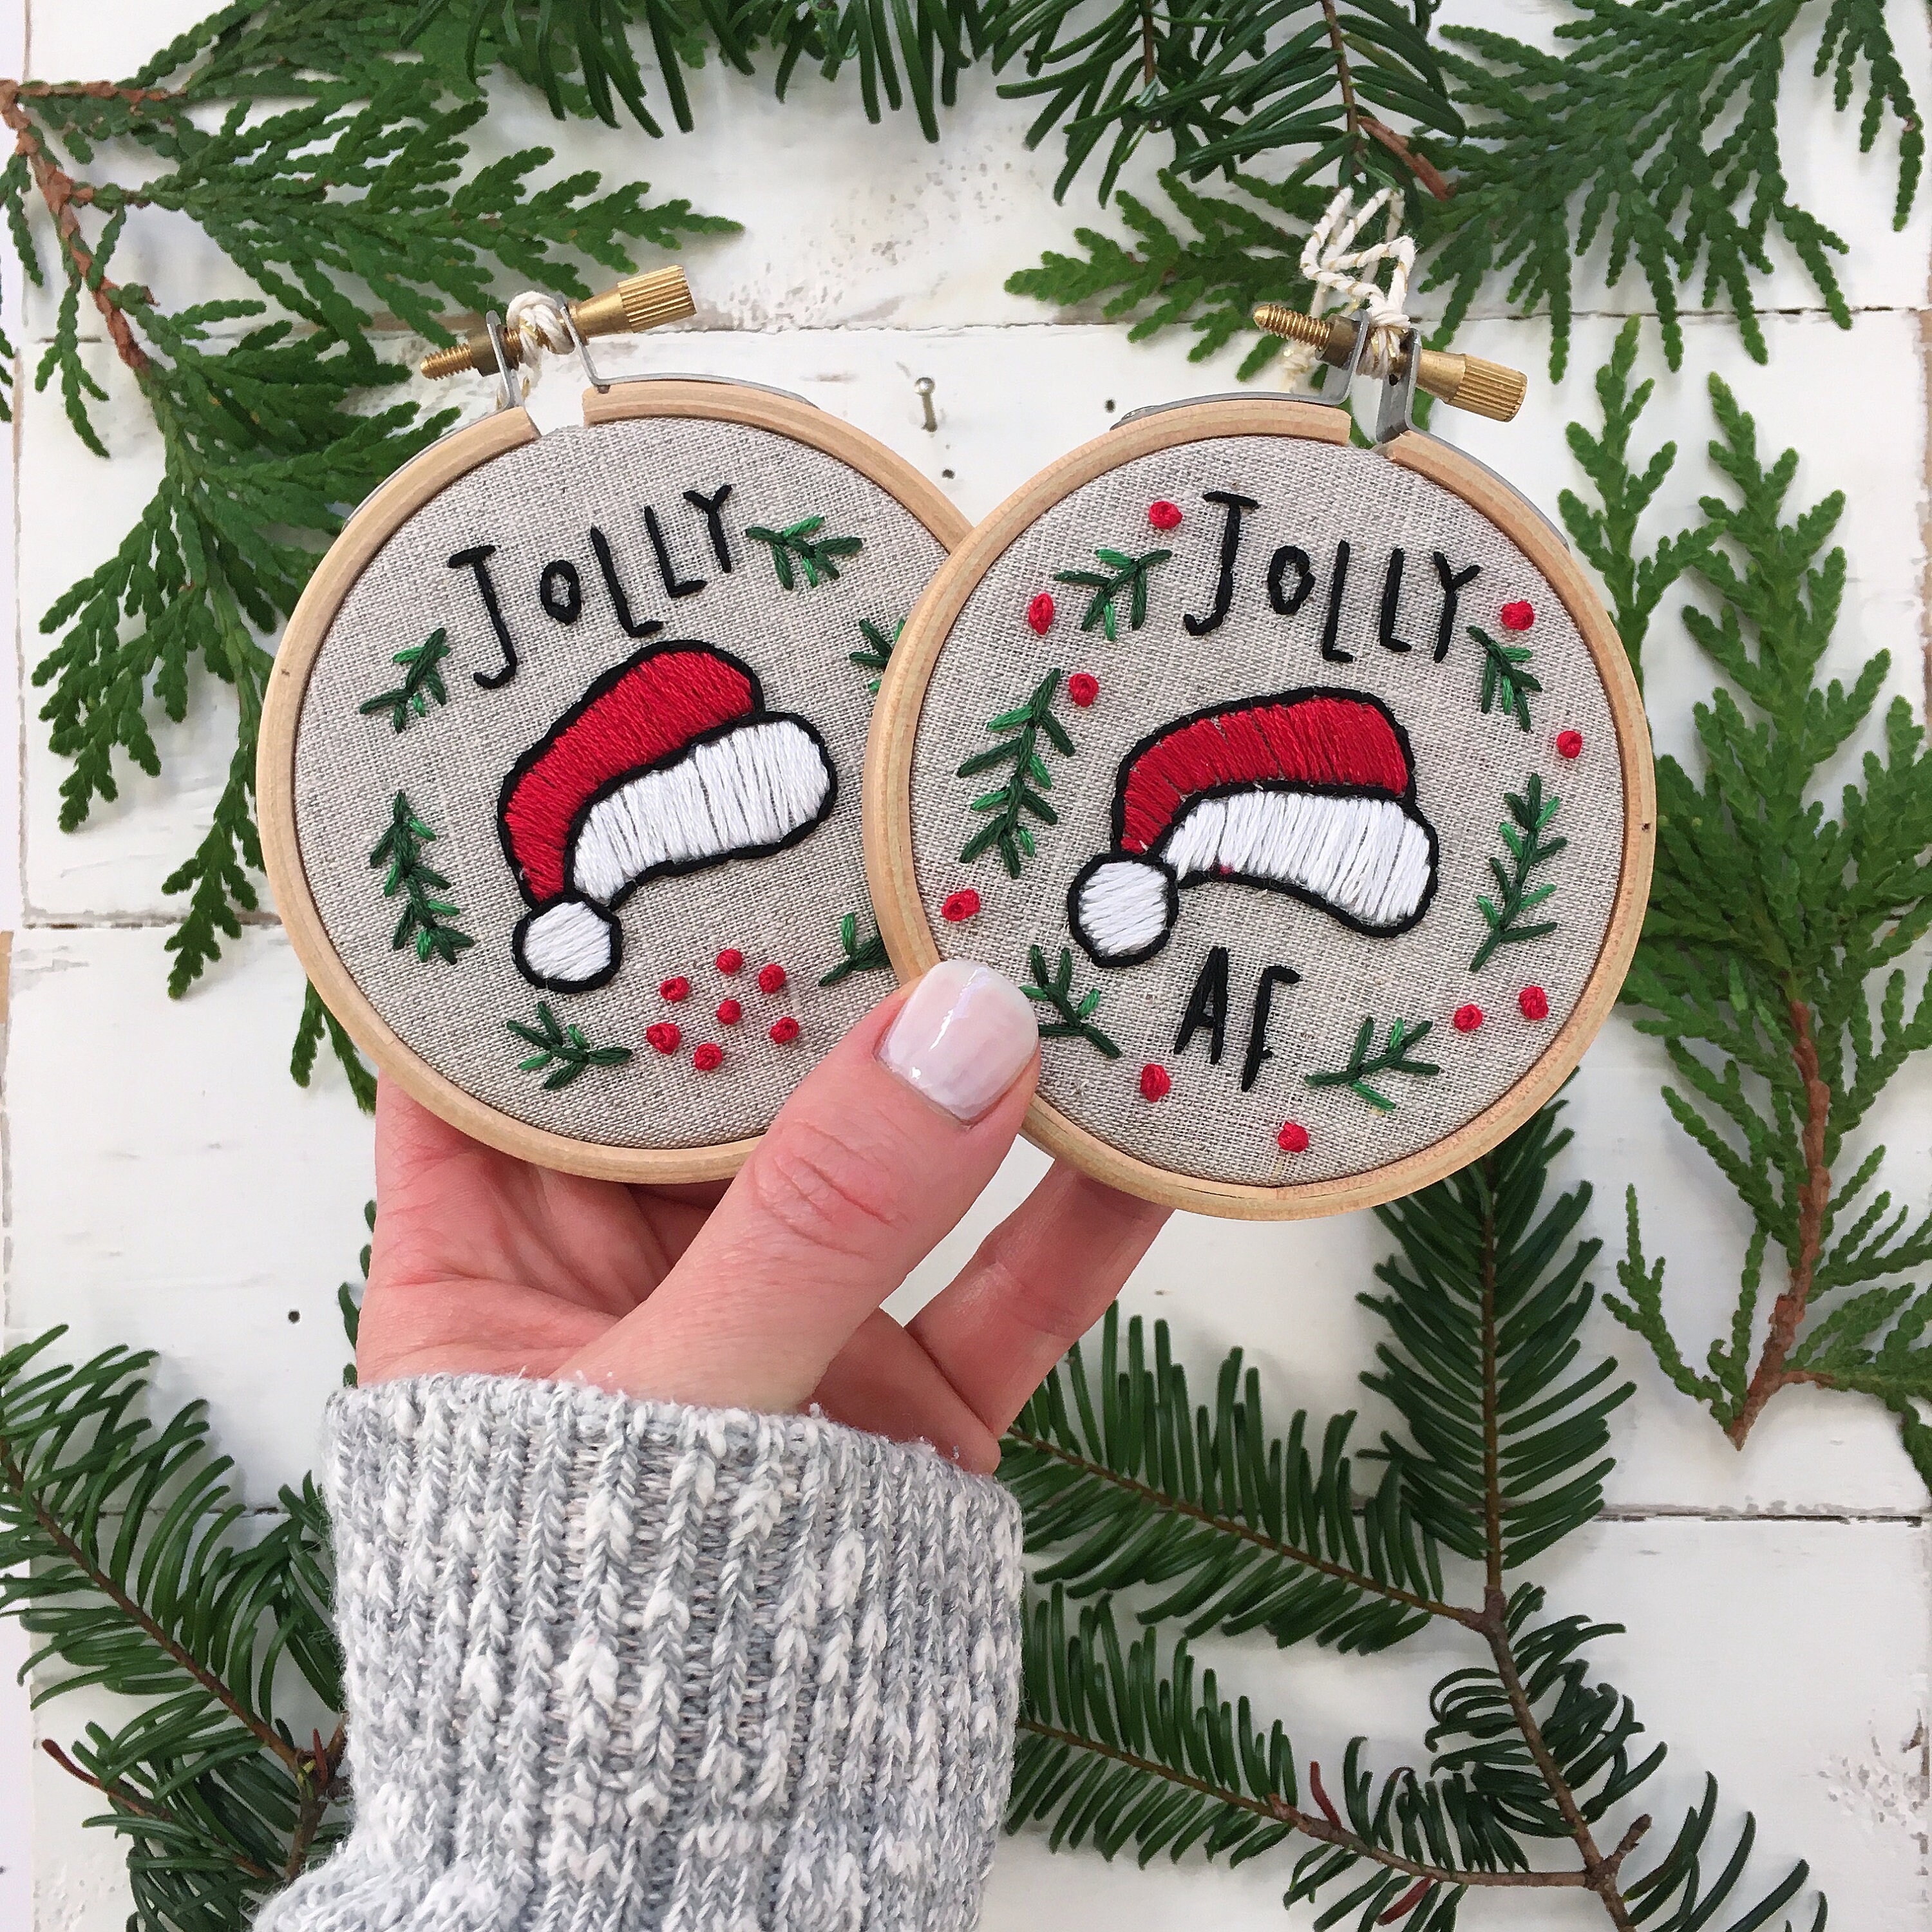 Embroidery Kit, Funny Christmas Ornament Gift, DIY Ornament Embroidery Kit,  FESTIVE AF Embroidery Kit, Home Craft Kit, Sarcastic Christmas 